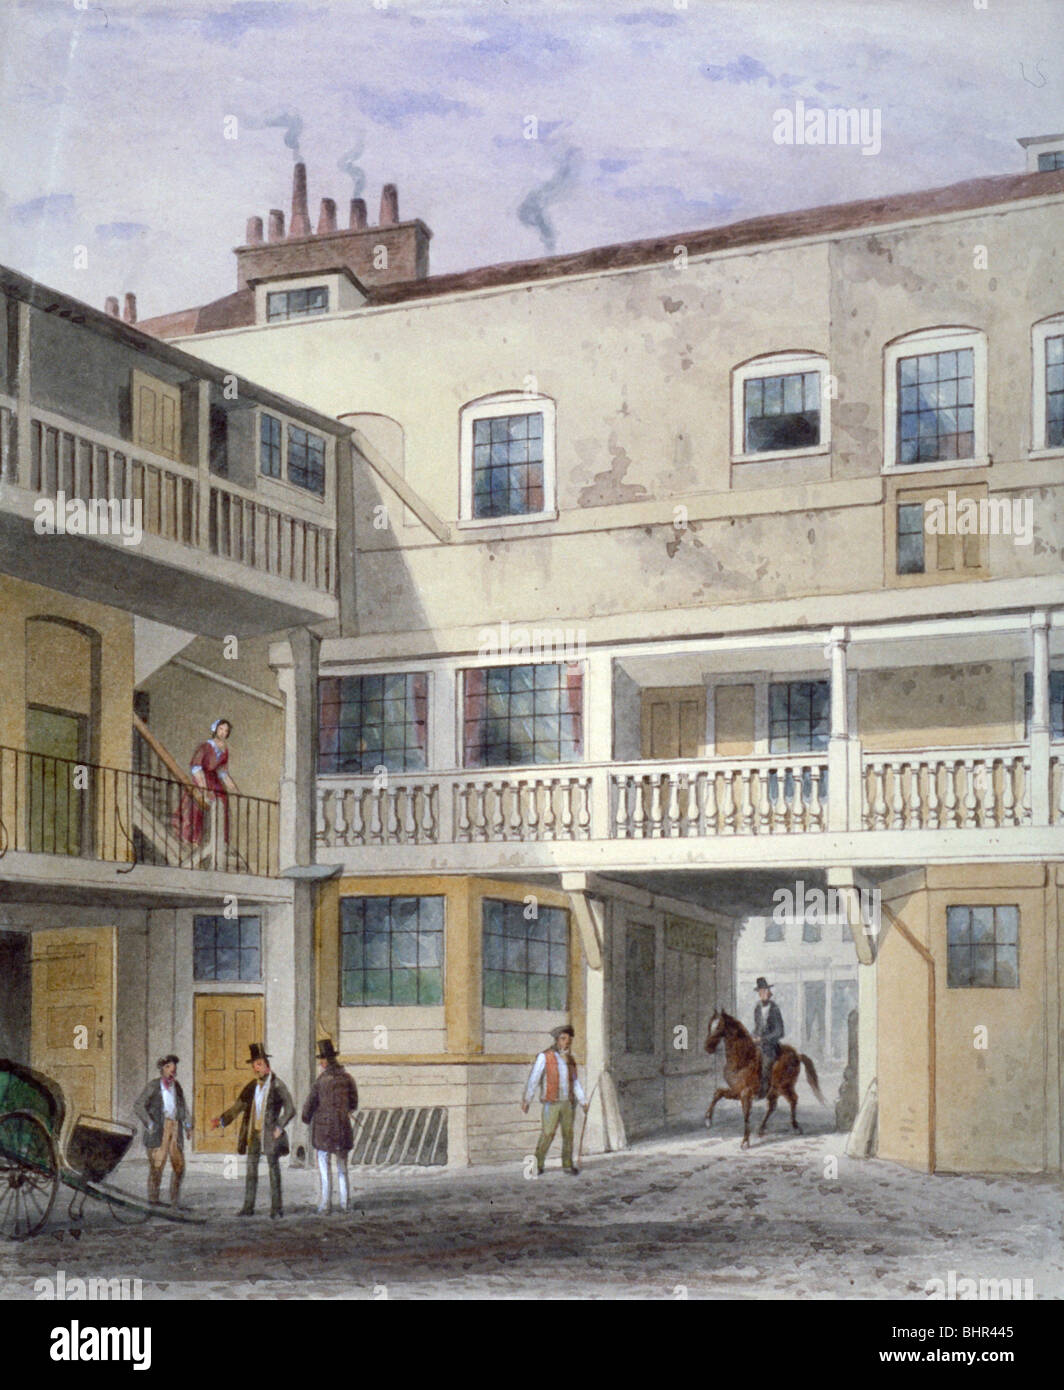 The Three Kings Inn on Piccadilly, Westminster, London, 1856. Artist: Thomas Hosmer Shepherd Stock Photo